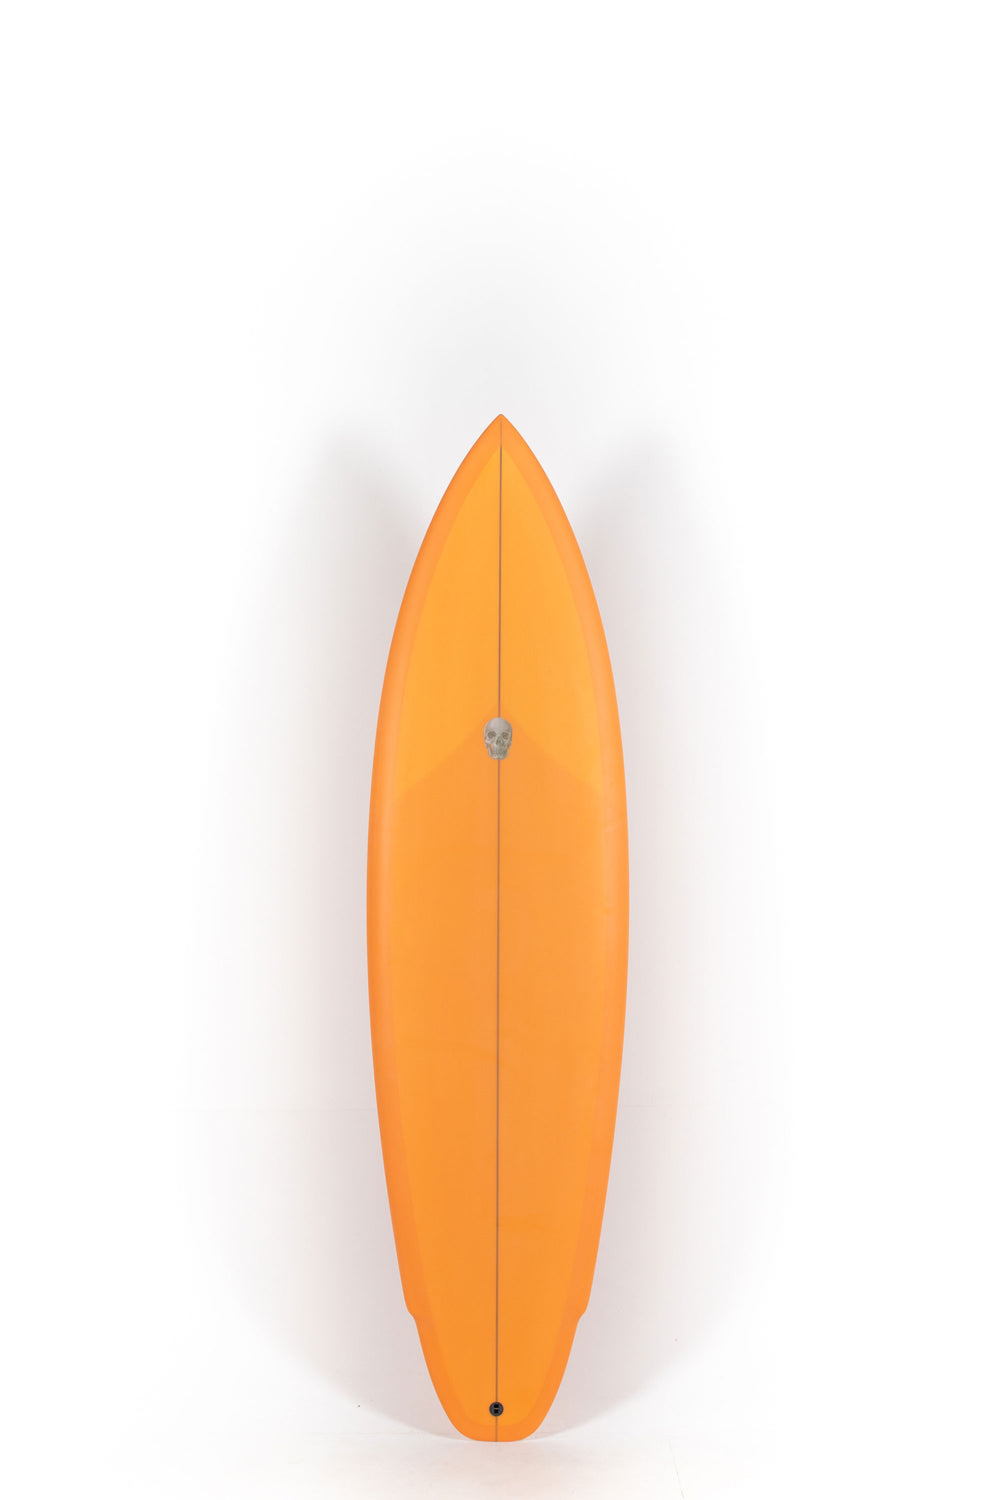 Pukas Sur Shop - Christenson Surfboards - LANE SPLITTER MID- 6'8